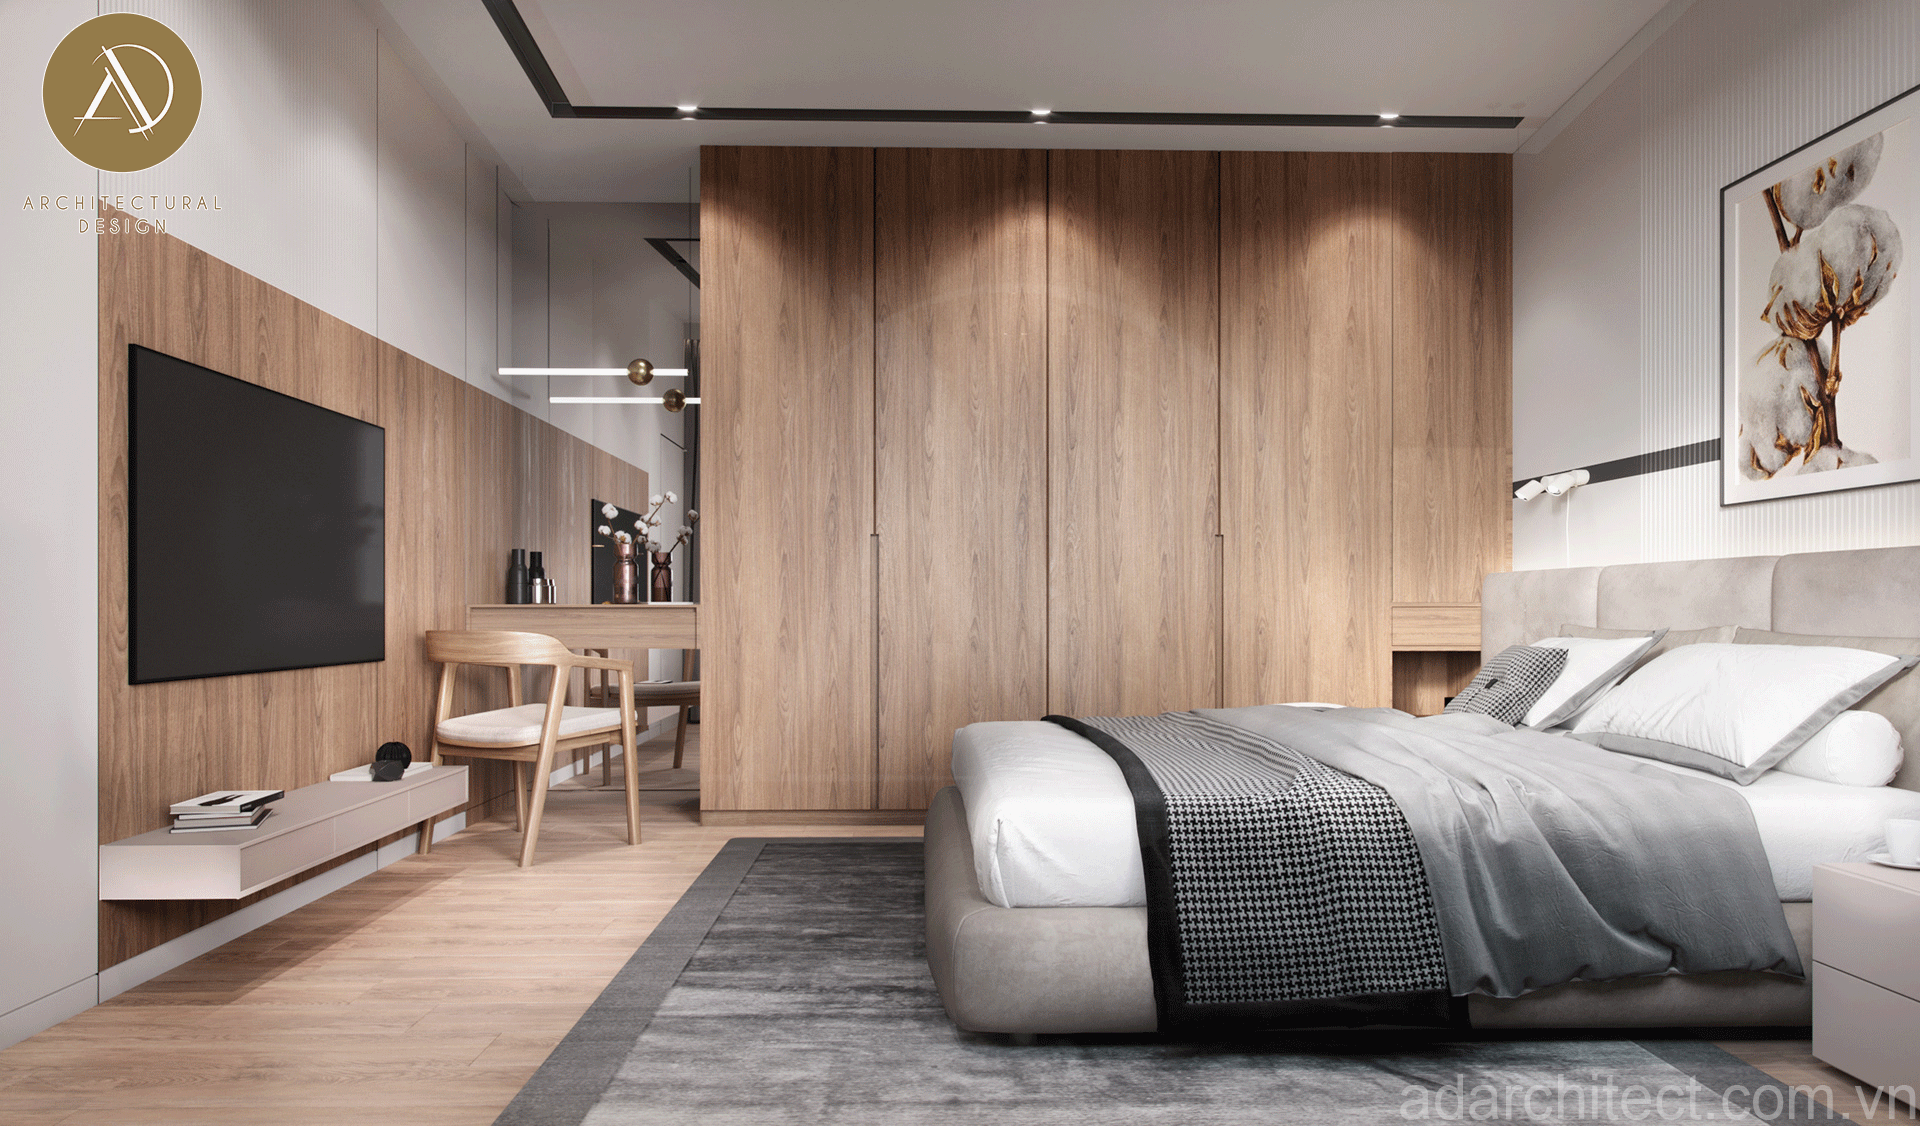 nội thất phòng ngủ bằng gỗ tự nhiên sang trọng có màu sắc hài hòa, bền đẹp